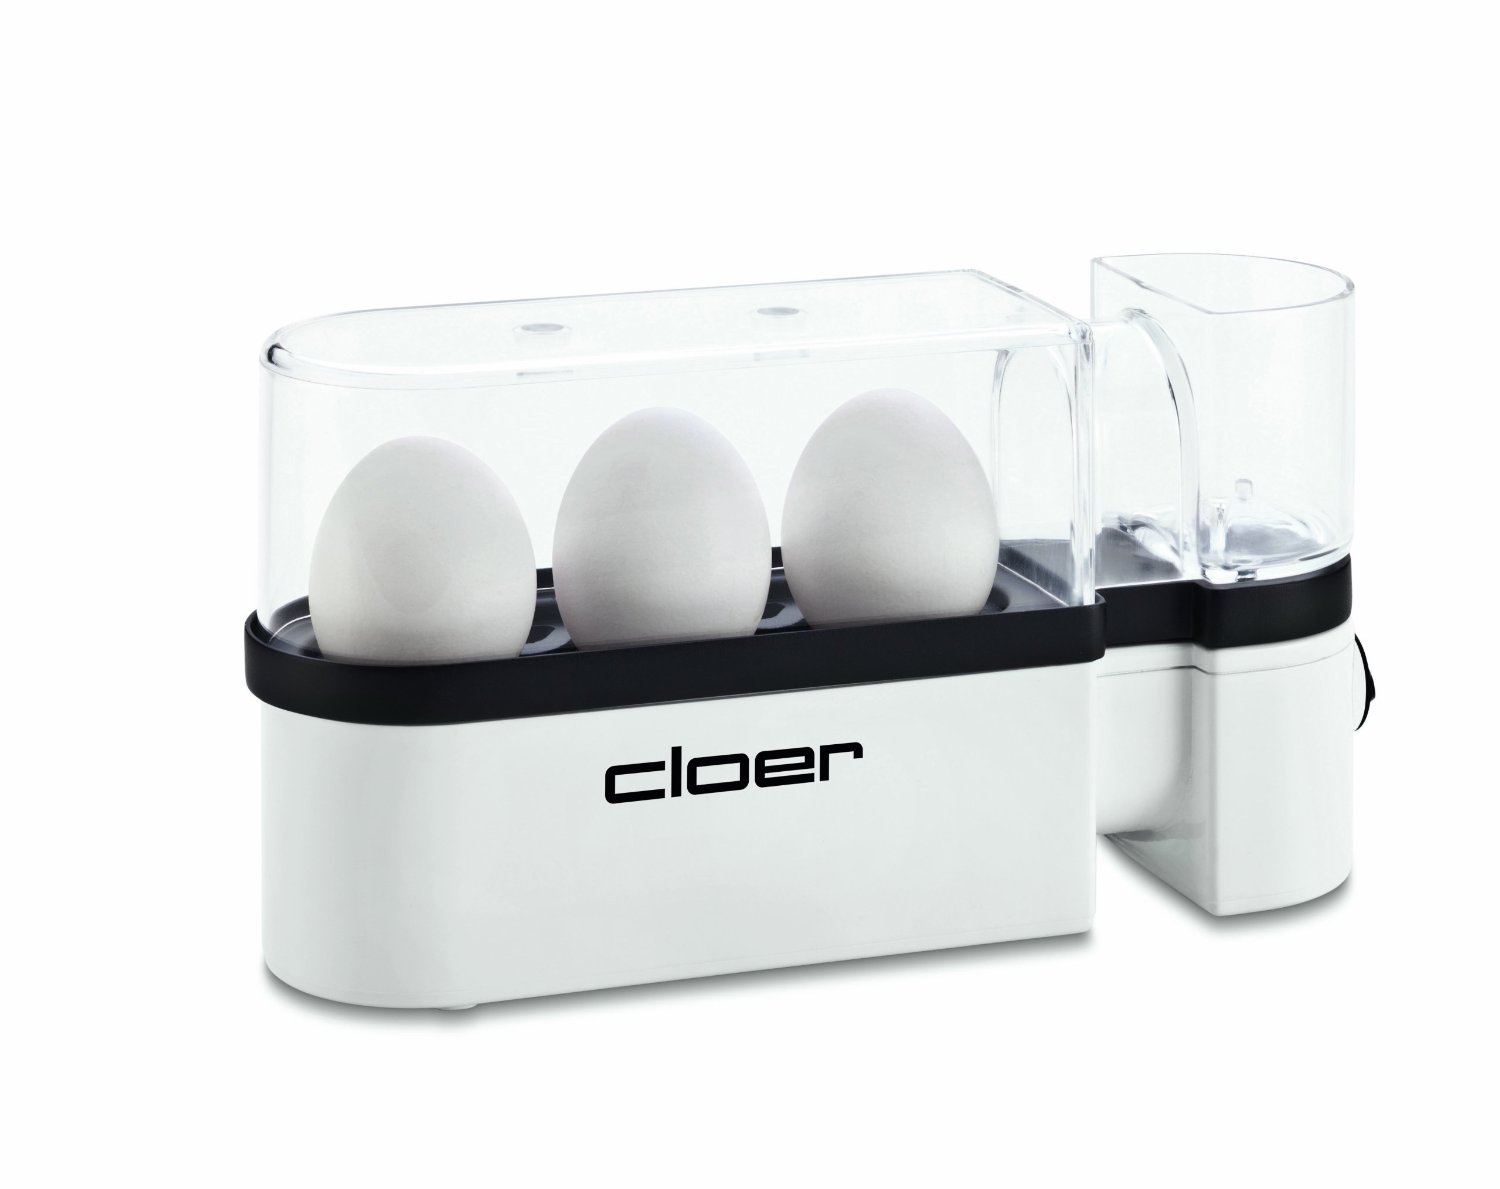 Cloer Egg Boiler 6021 white